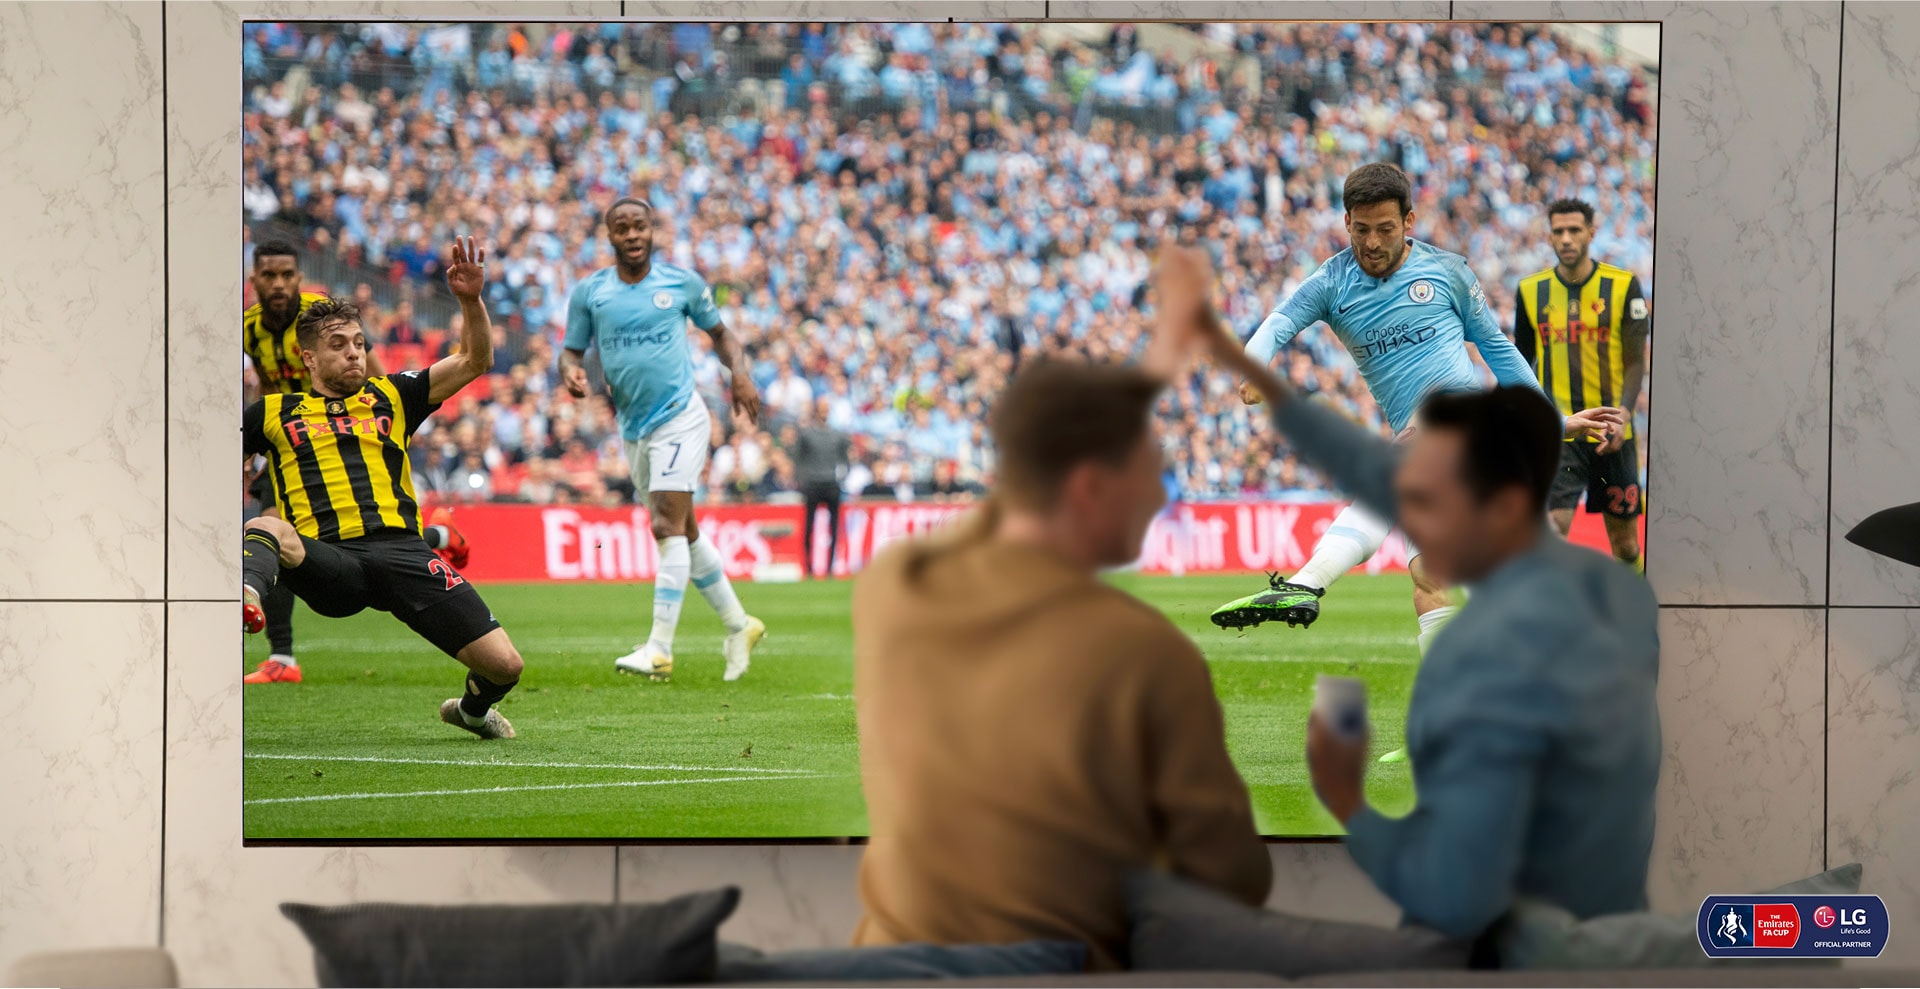 Deux hommes applaudissent en regardant un match de football sur un téléviseur NanoCell dans un salon. La technologie NanoCell est illustrée par une amélioration de l’image en dessous du téléviseur.